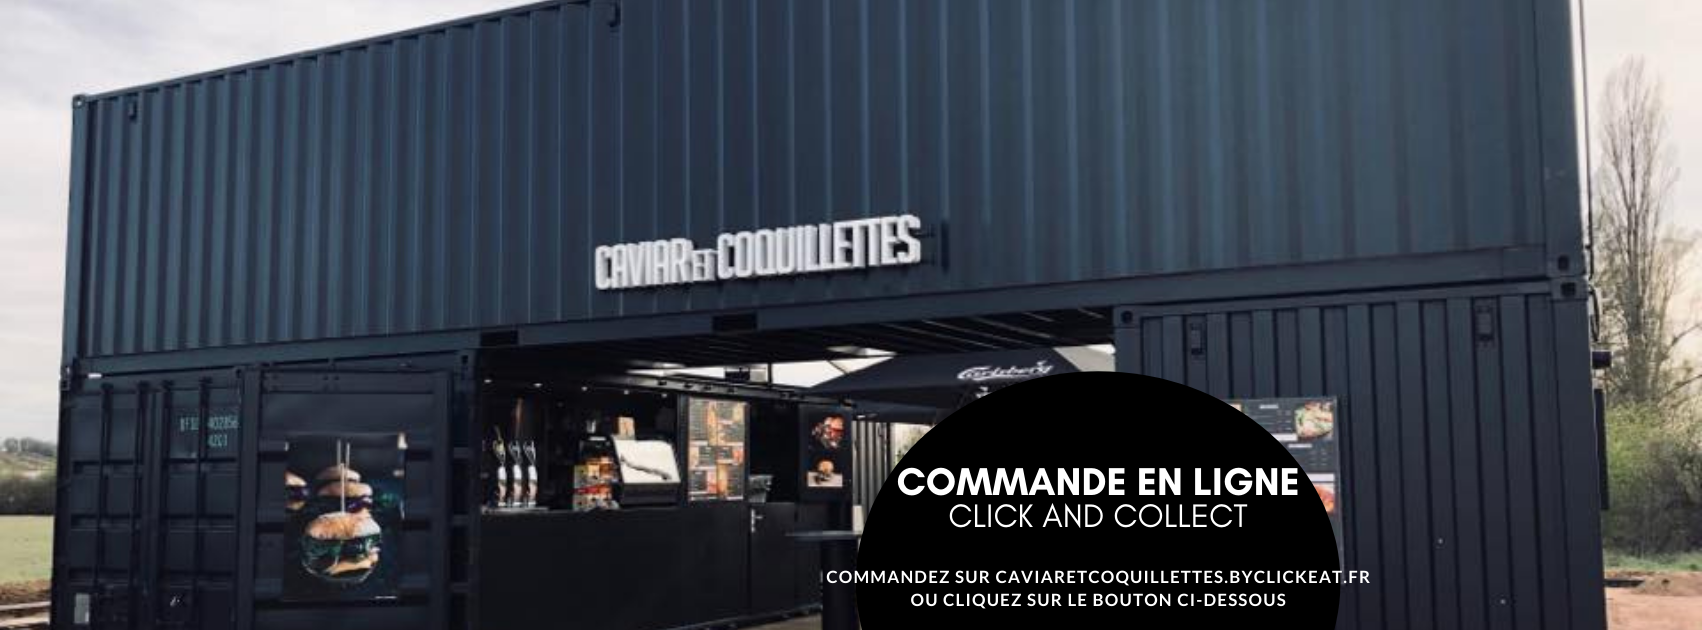 Boutique CAVIAR ET COQUILLETTES - Nevers